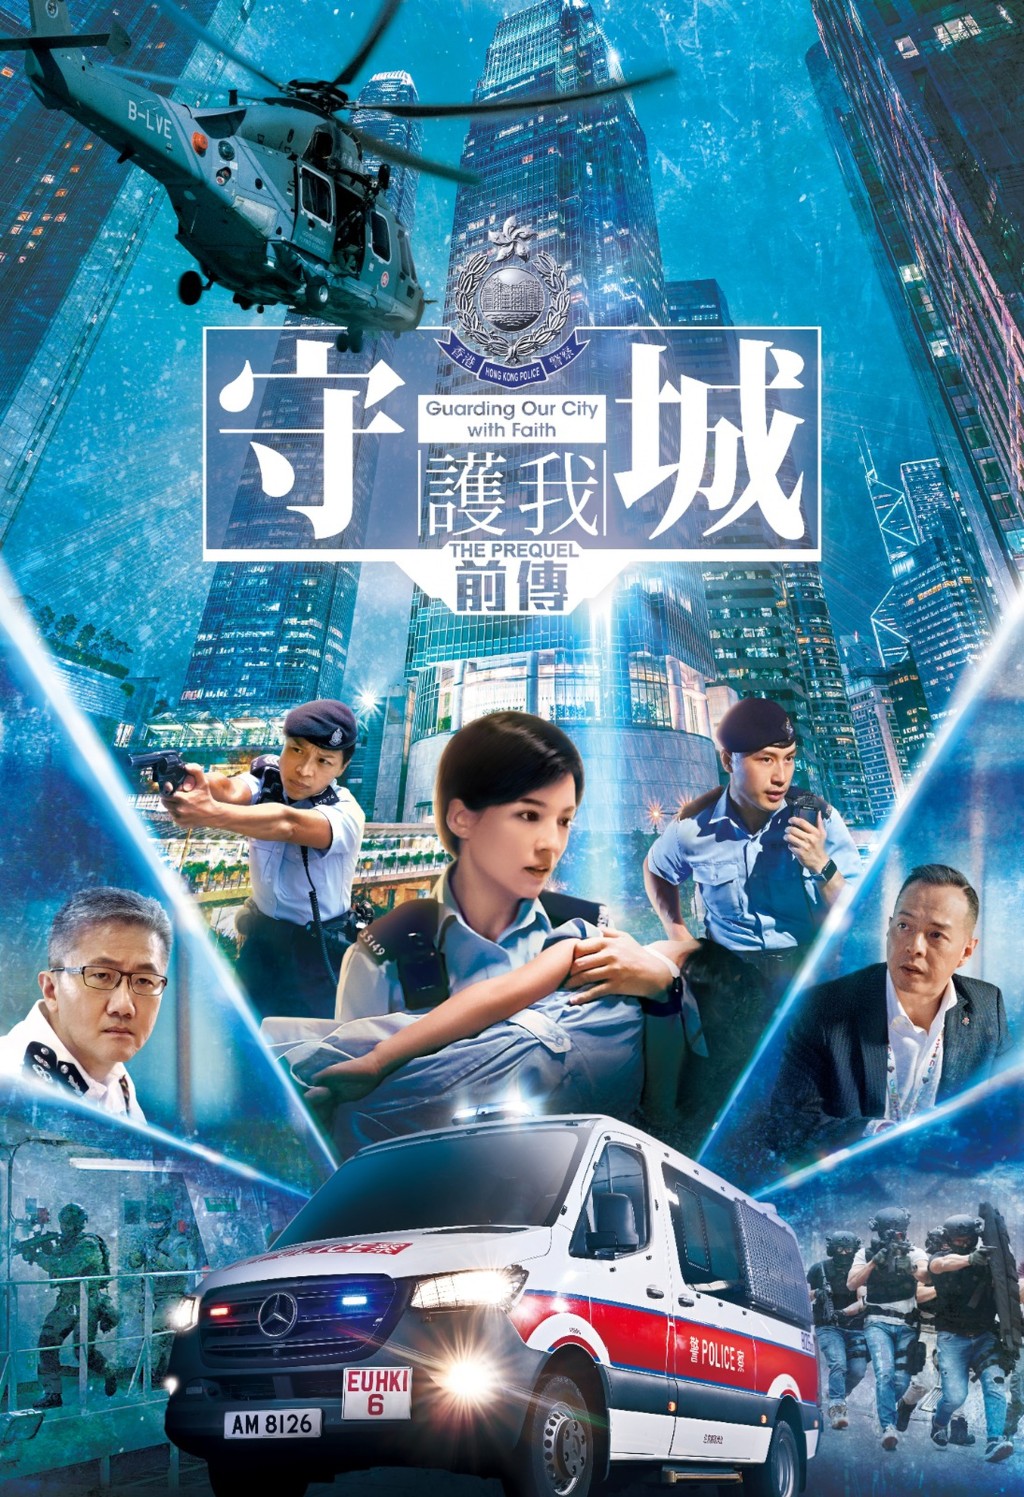 警隊另一個重頭戲是在6月24日推出的新一輯宣傳片《守城前傳》。